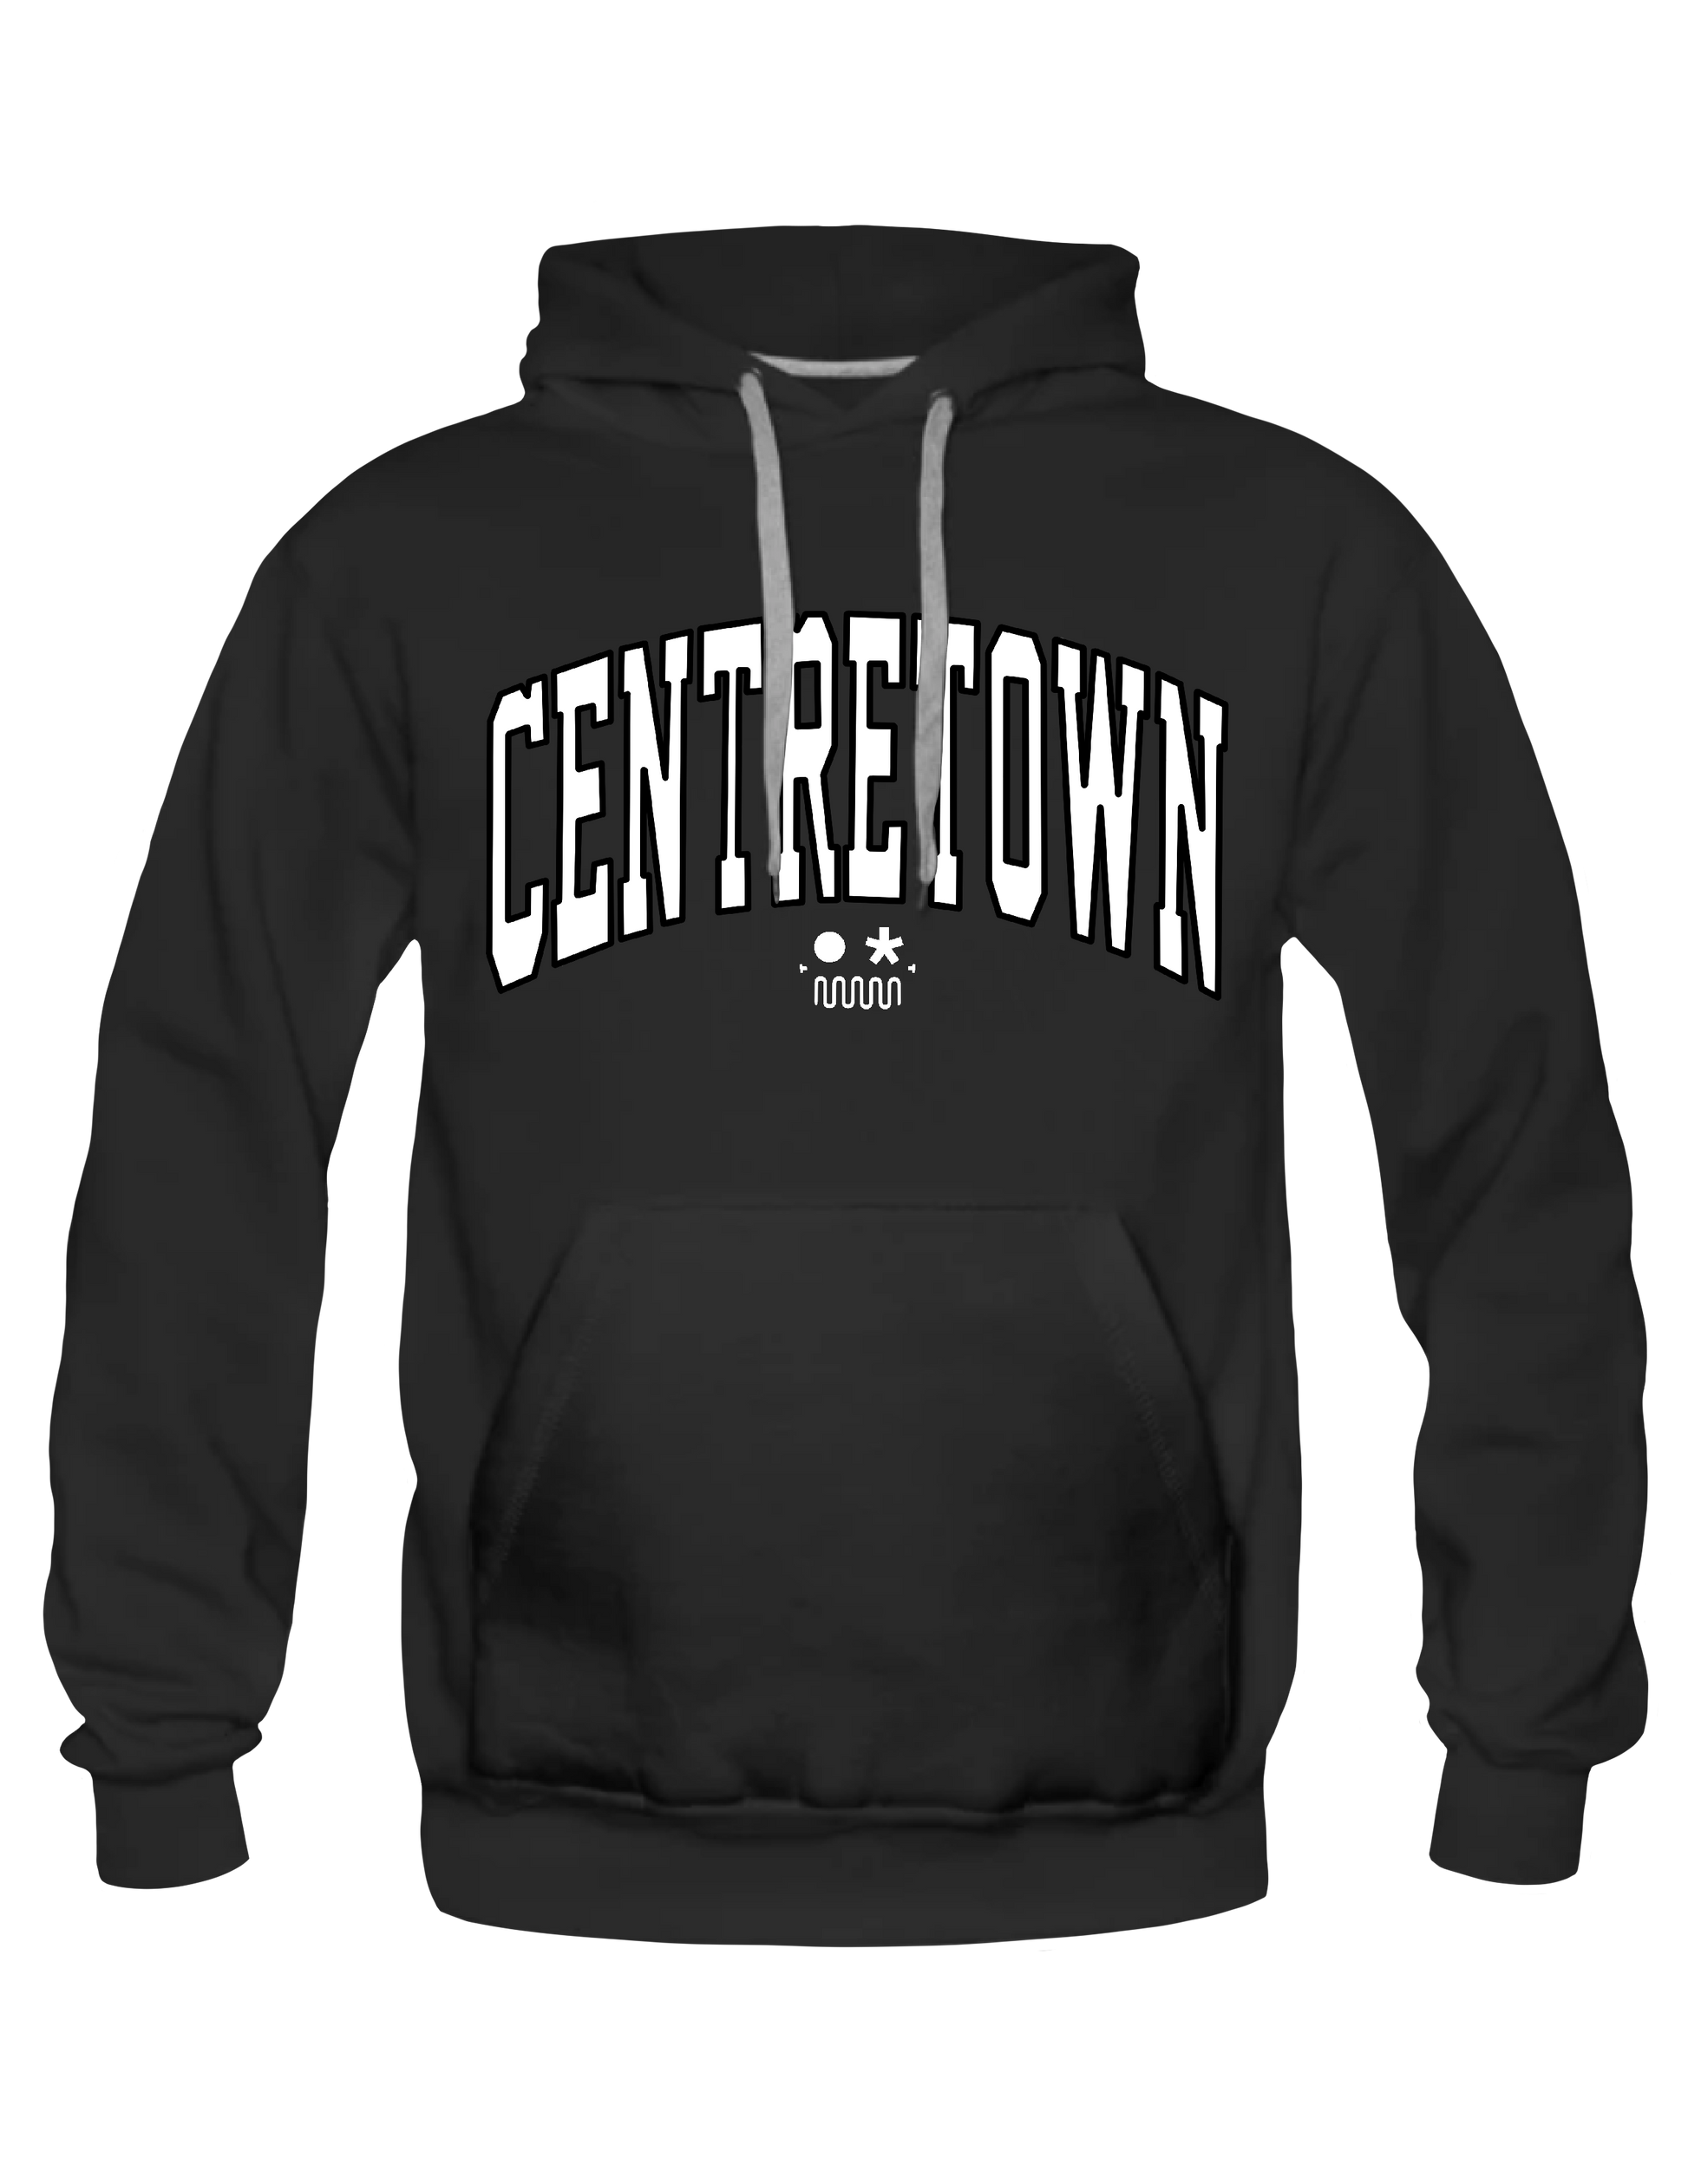 CENTRETOWN* // OTTAWA Arch Logo - Hoodie by BOYSDONTDRAW